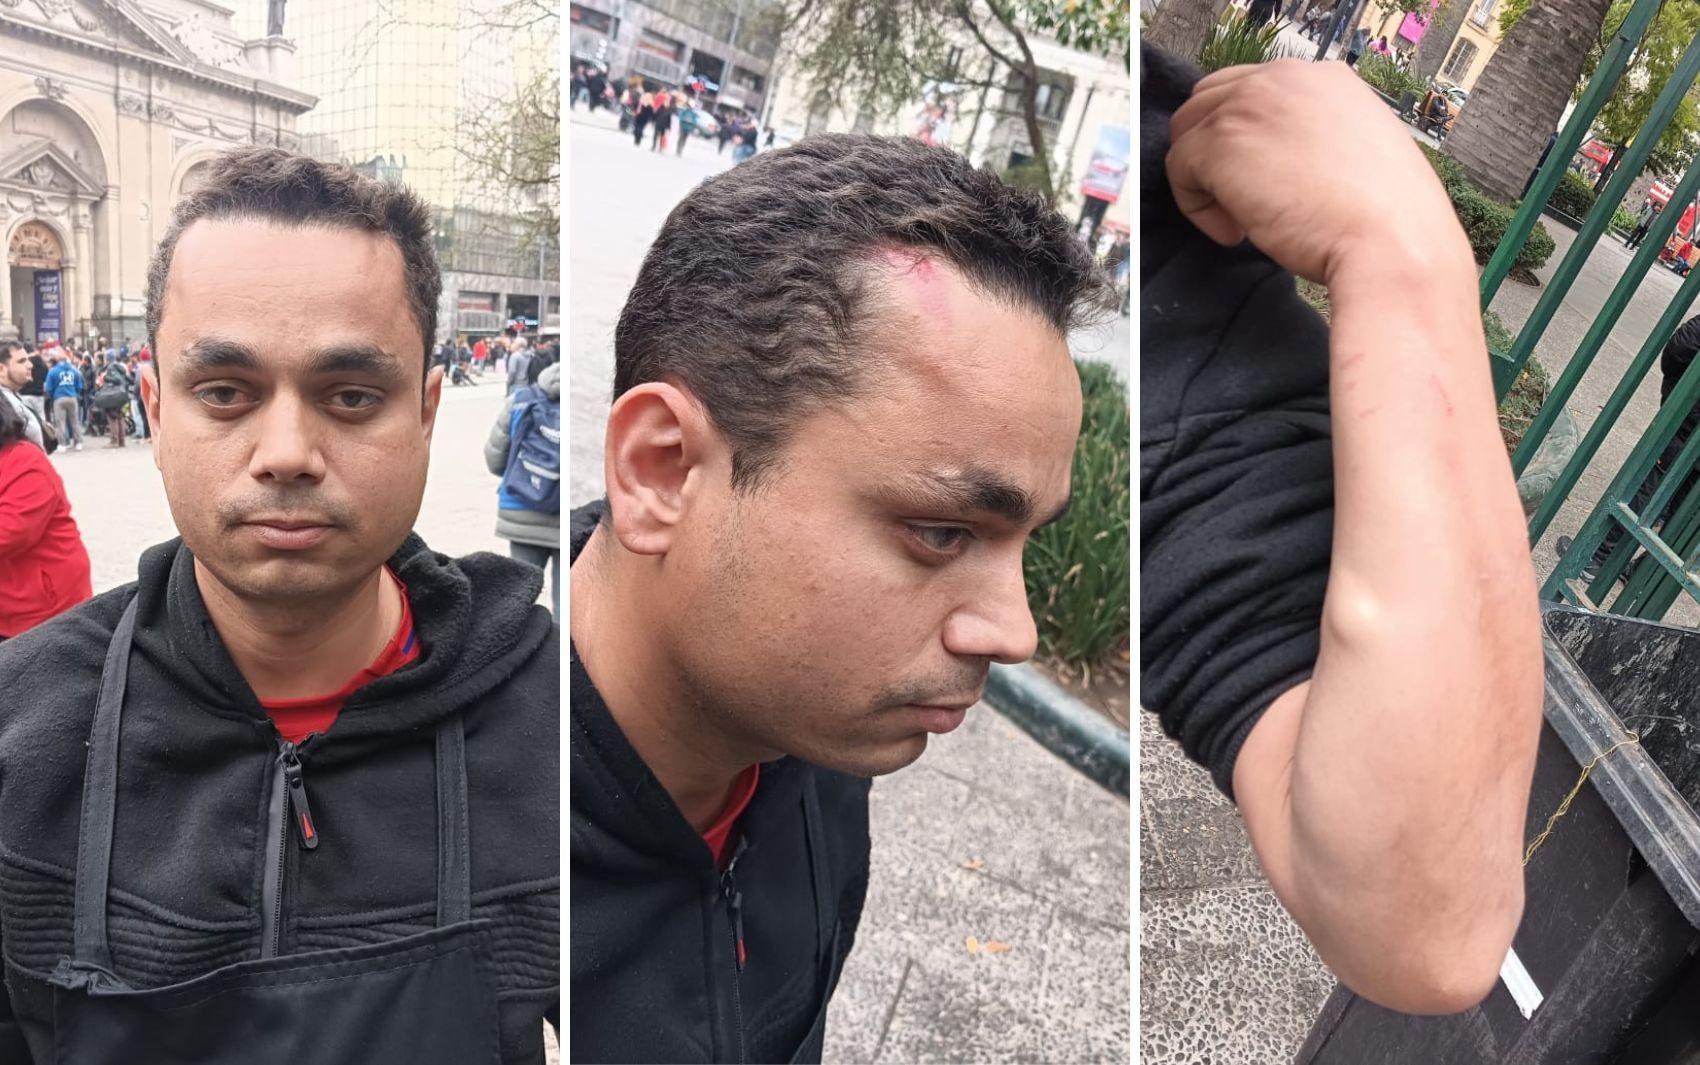 Brasileiro é espancado no Chile durante o primeiro dia de trabalho em restaurante, denuncia amigo